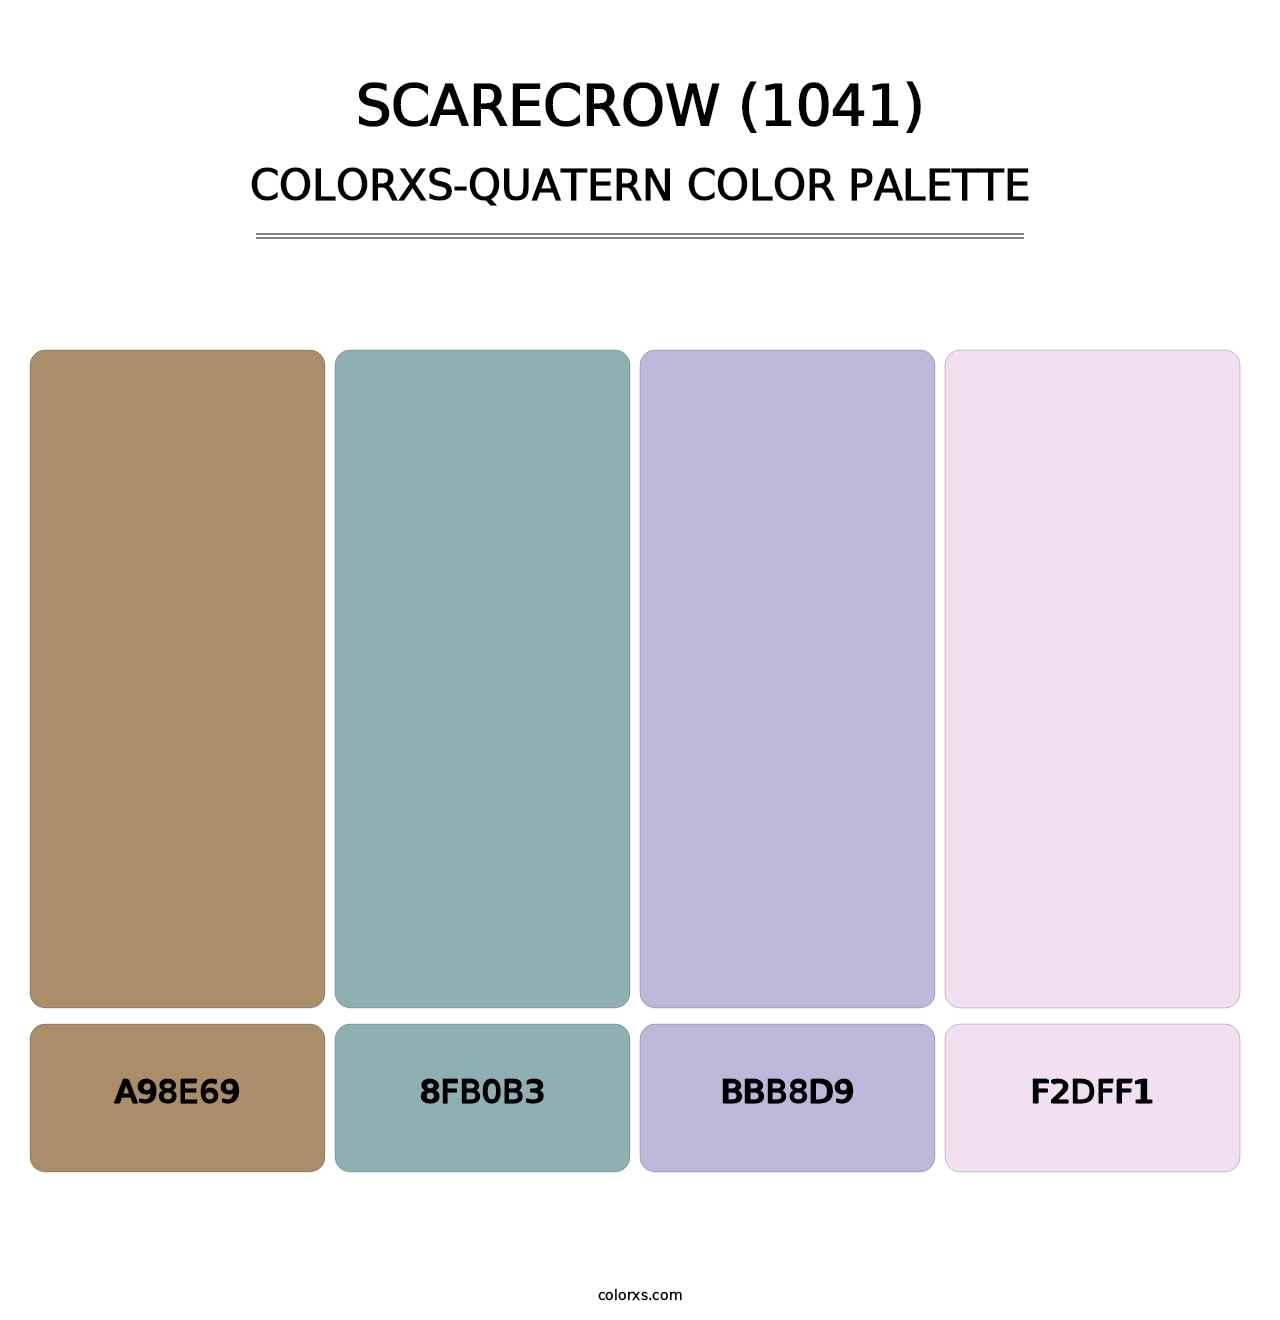 Scarecrow (1041) - Colorxs Quatern Palette